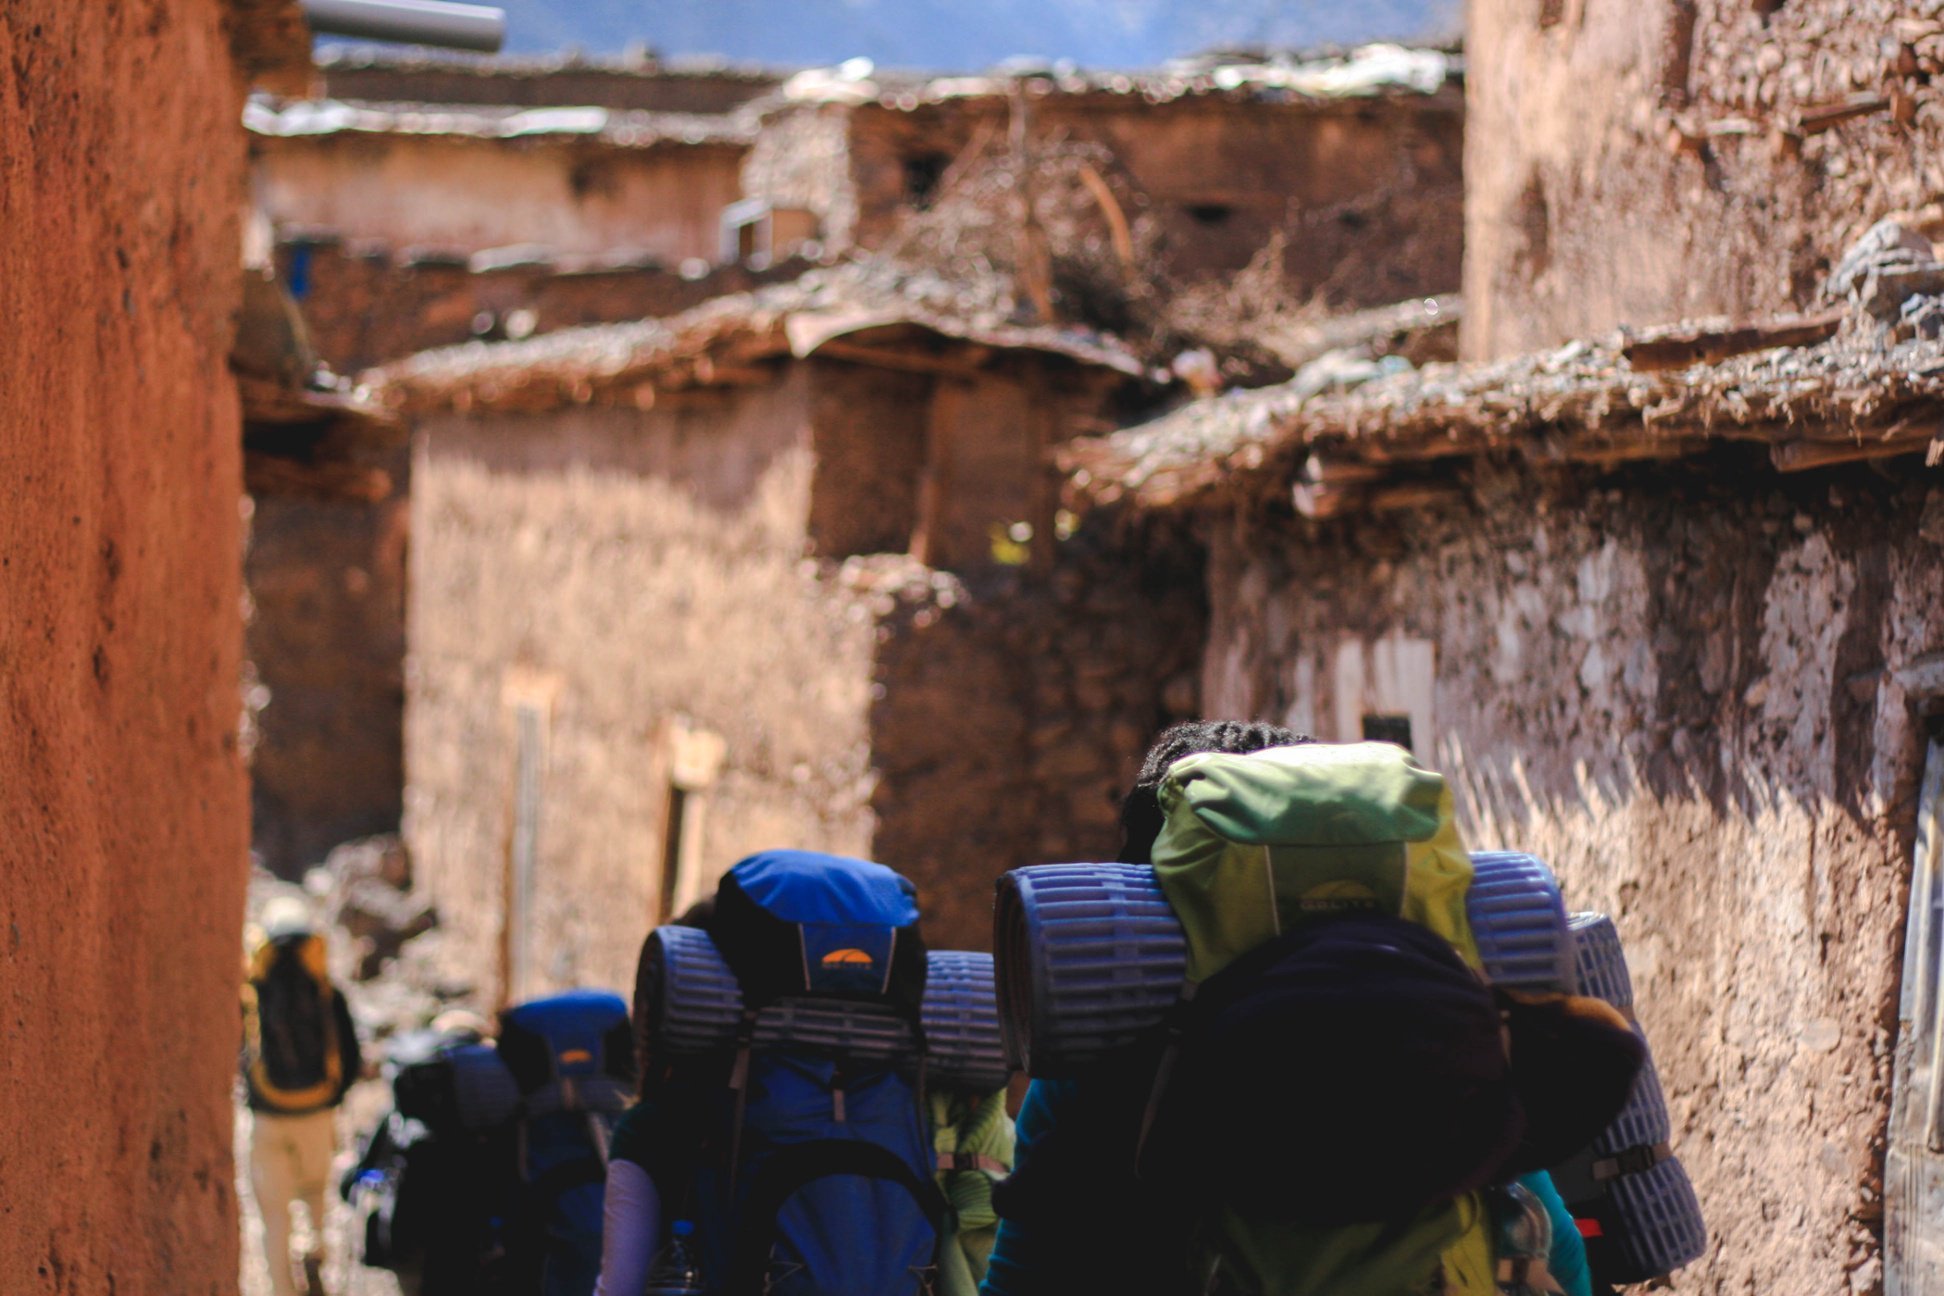 YWAM outreach team walking through a village while on outreach in Nepal